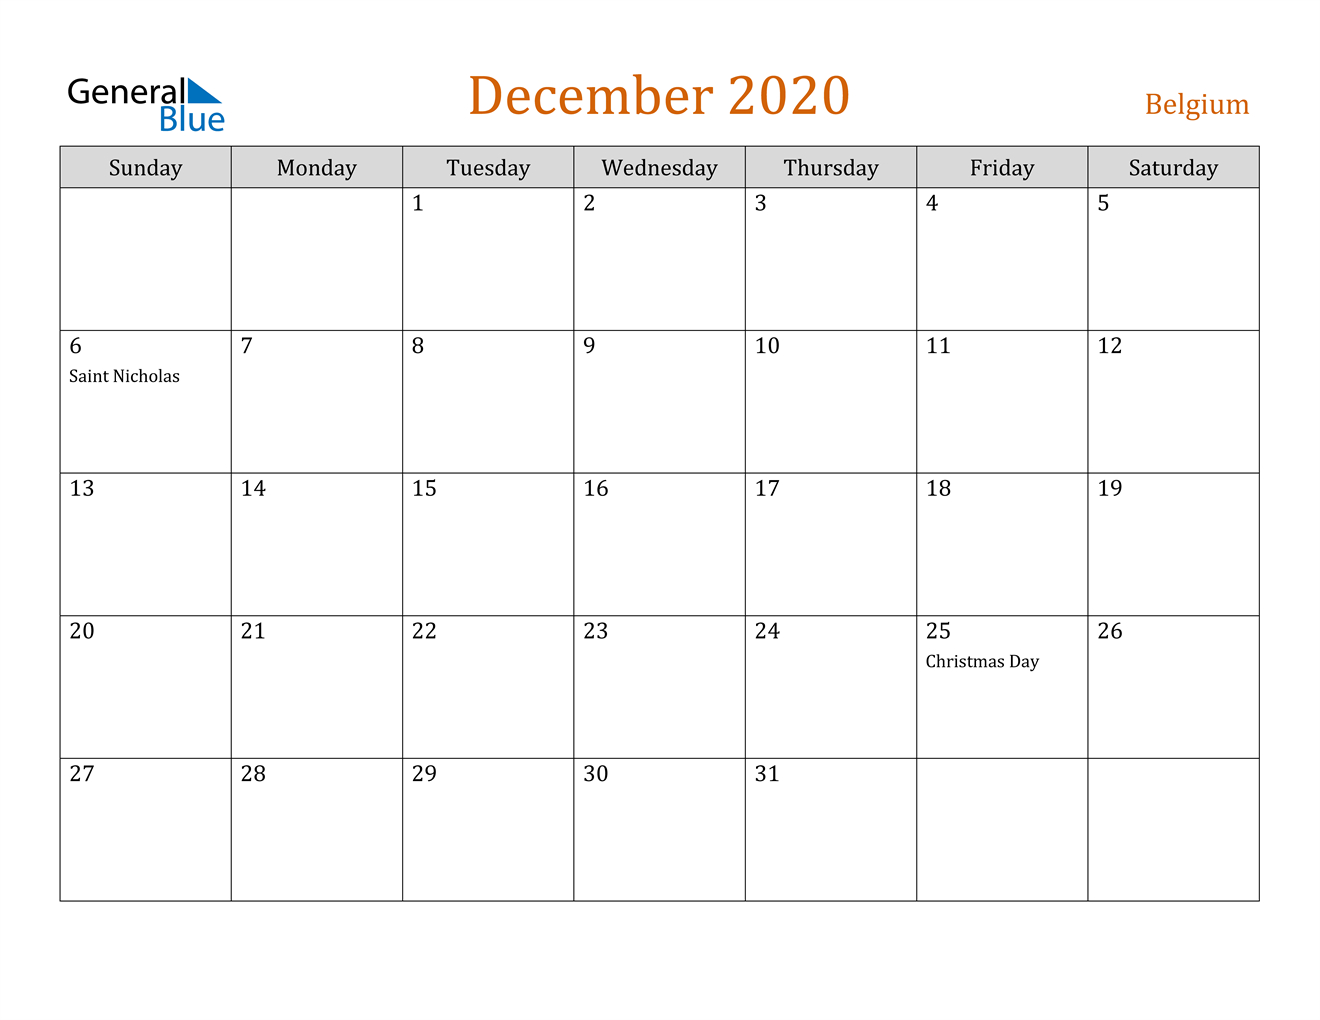 Belgium December 2020 Calendar With Holidays